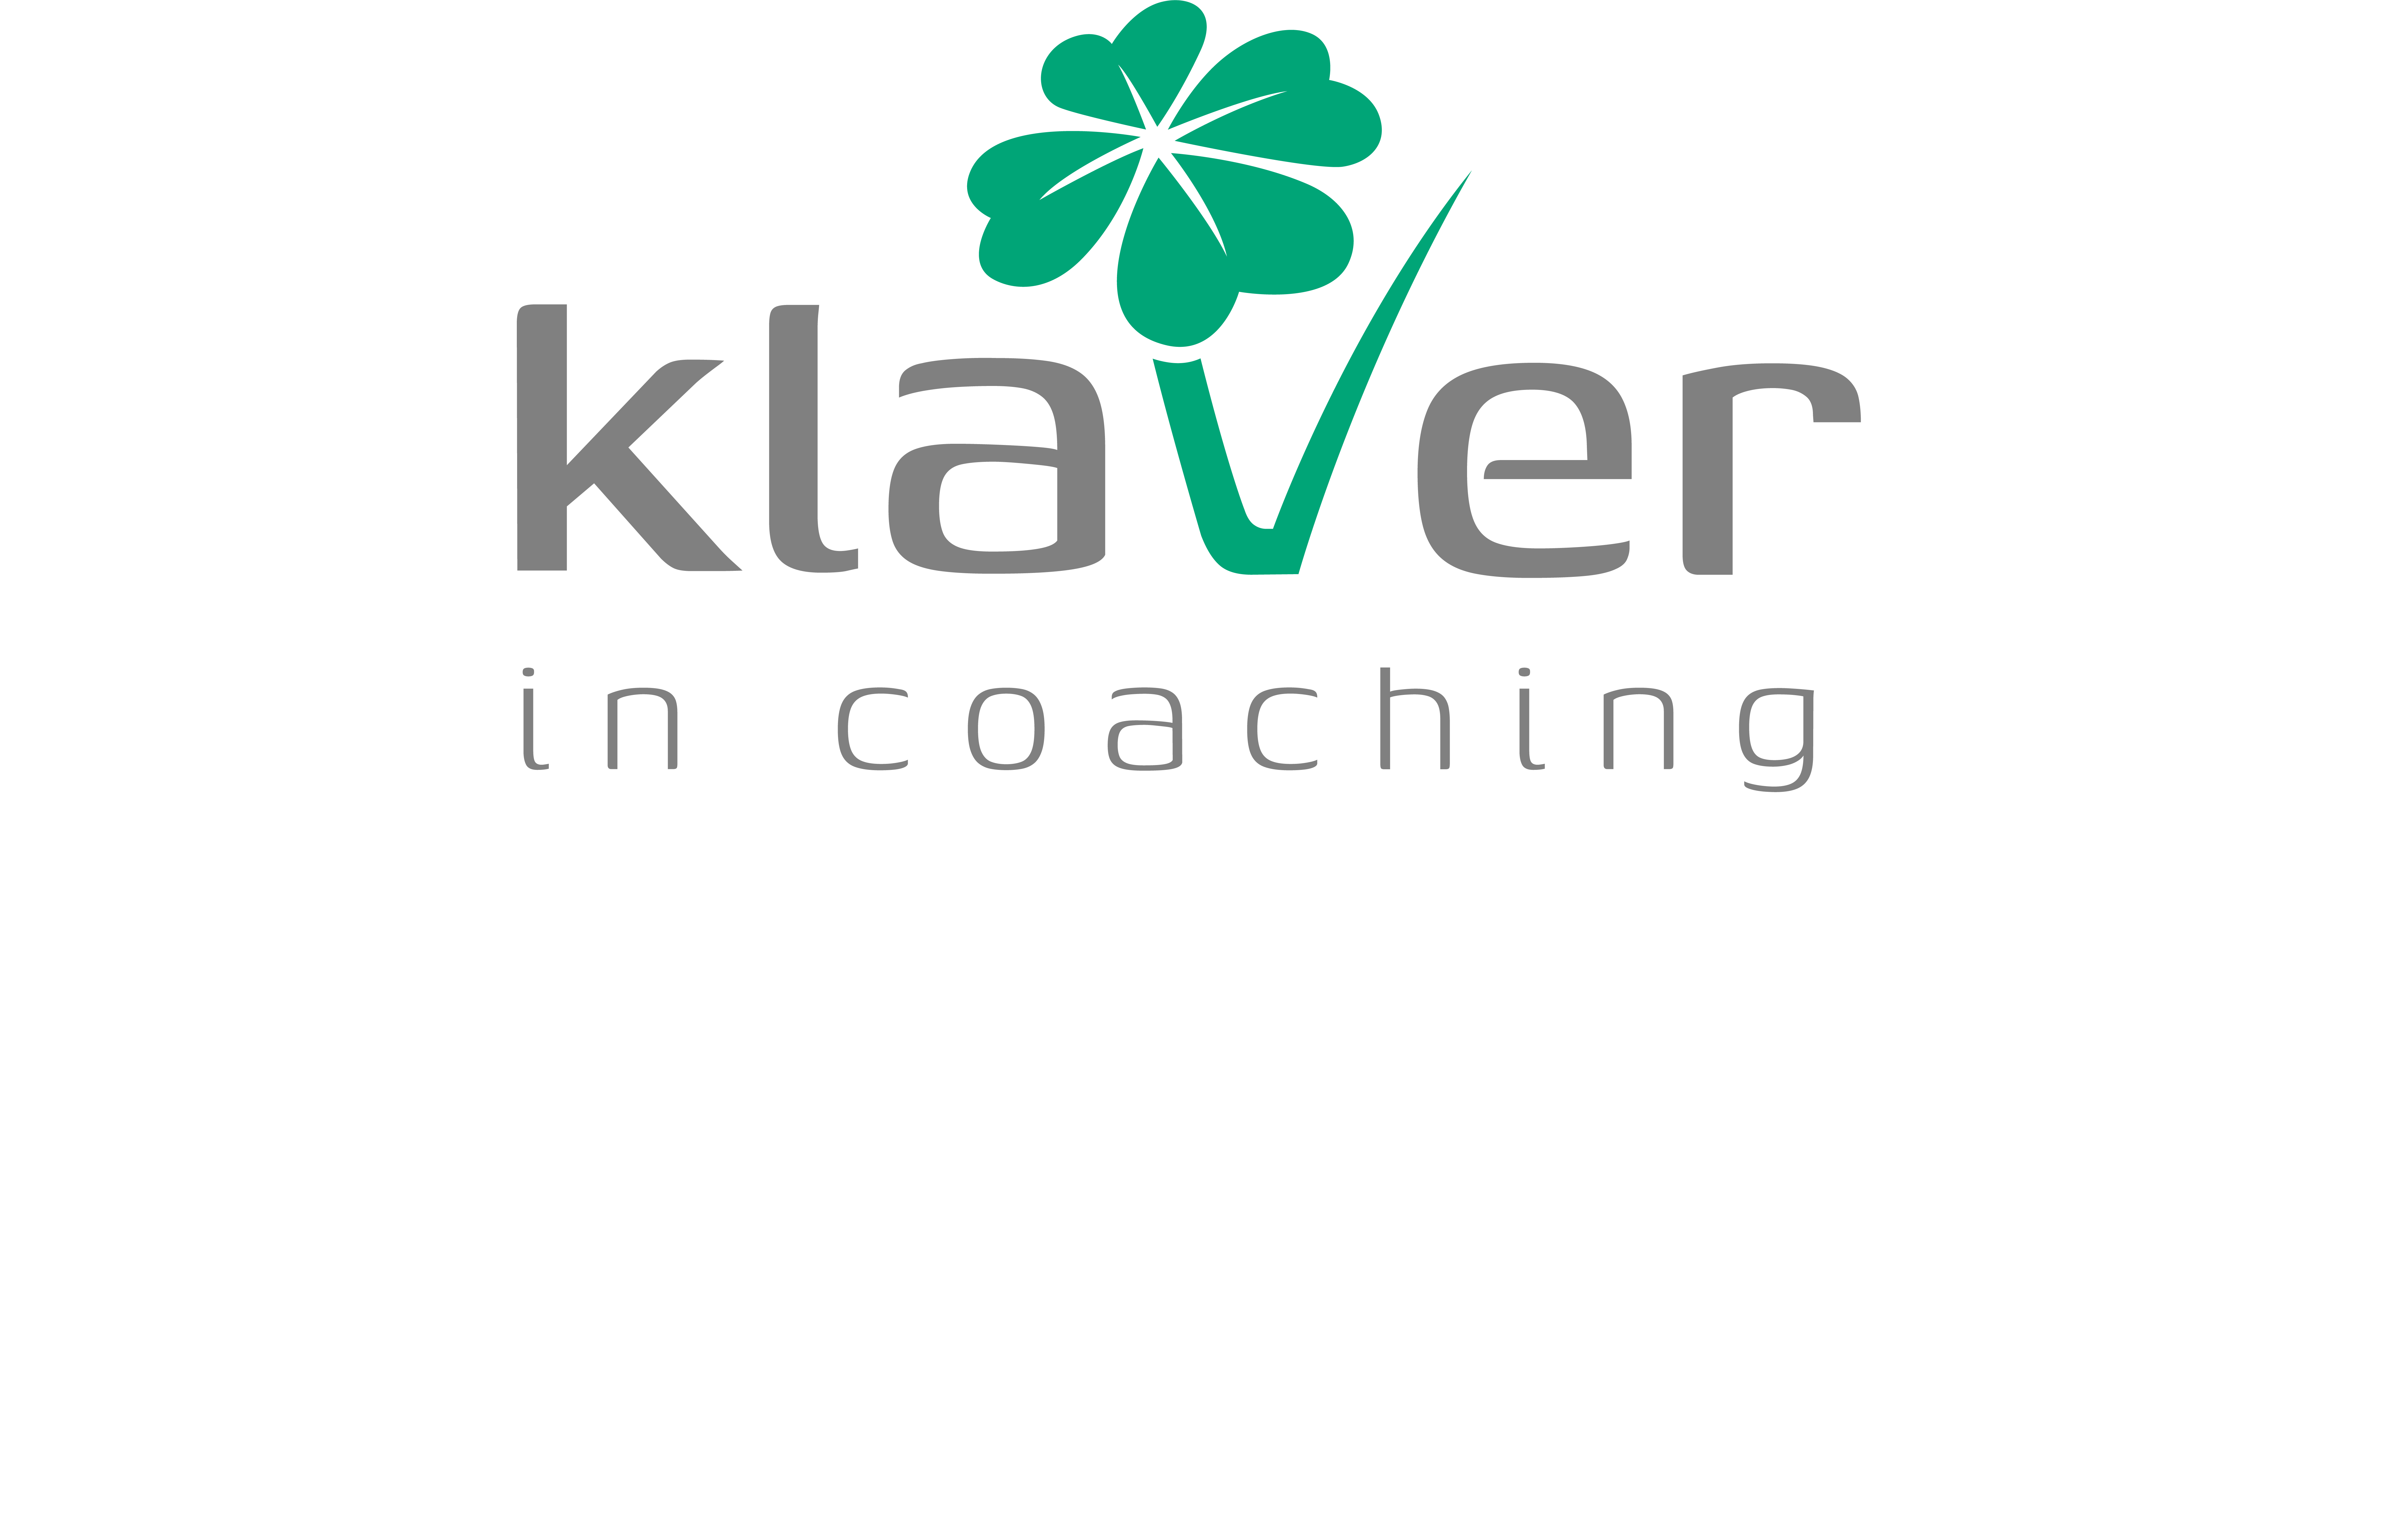 klaver in coaching logo